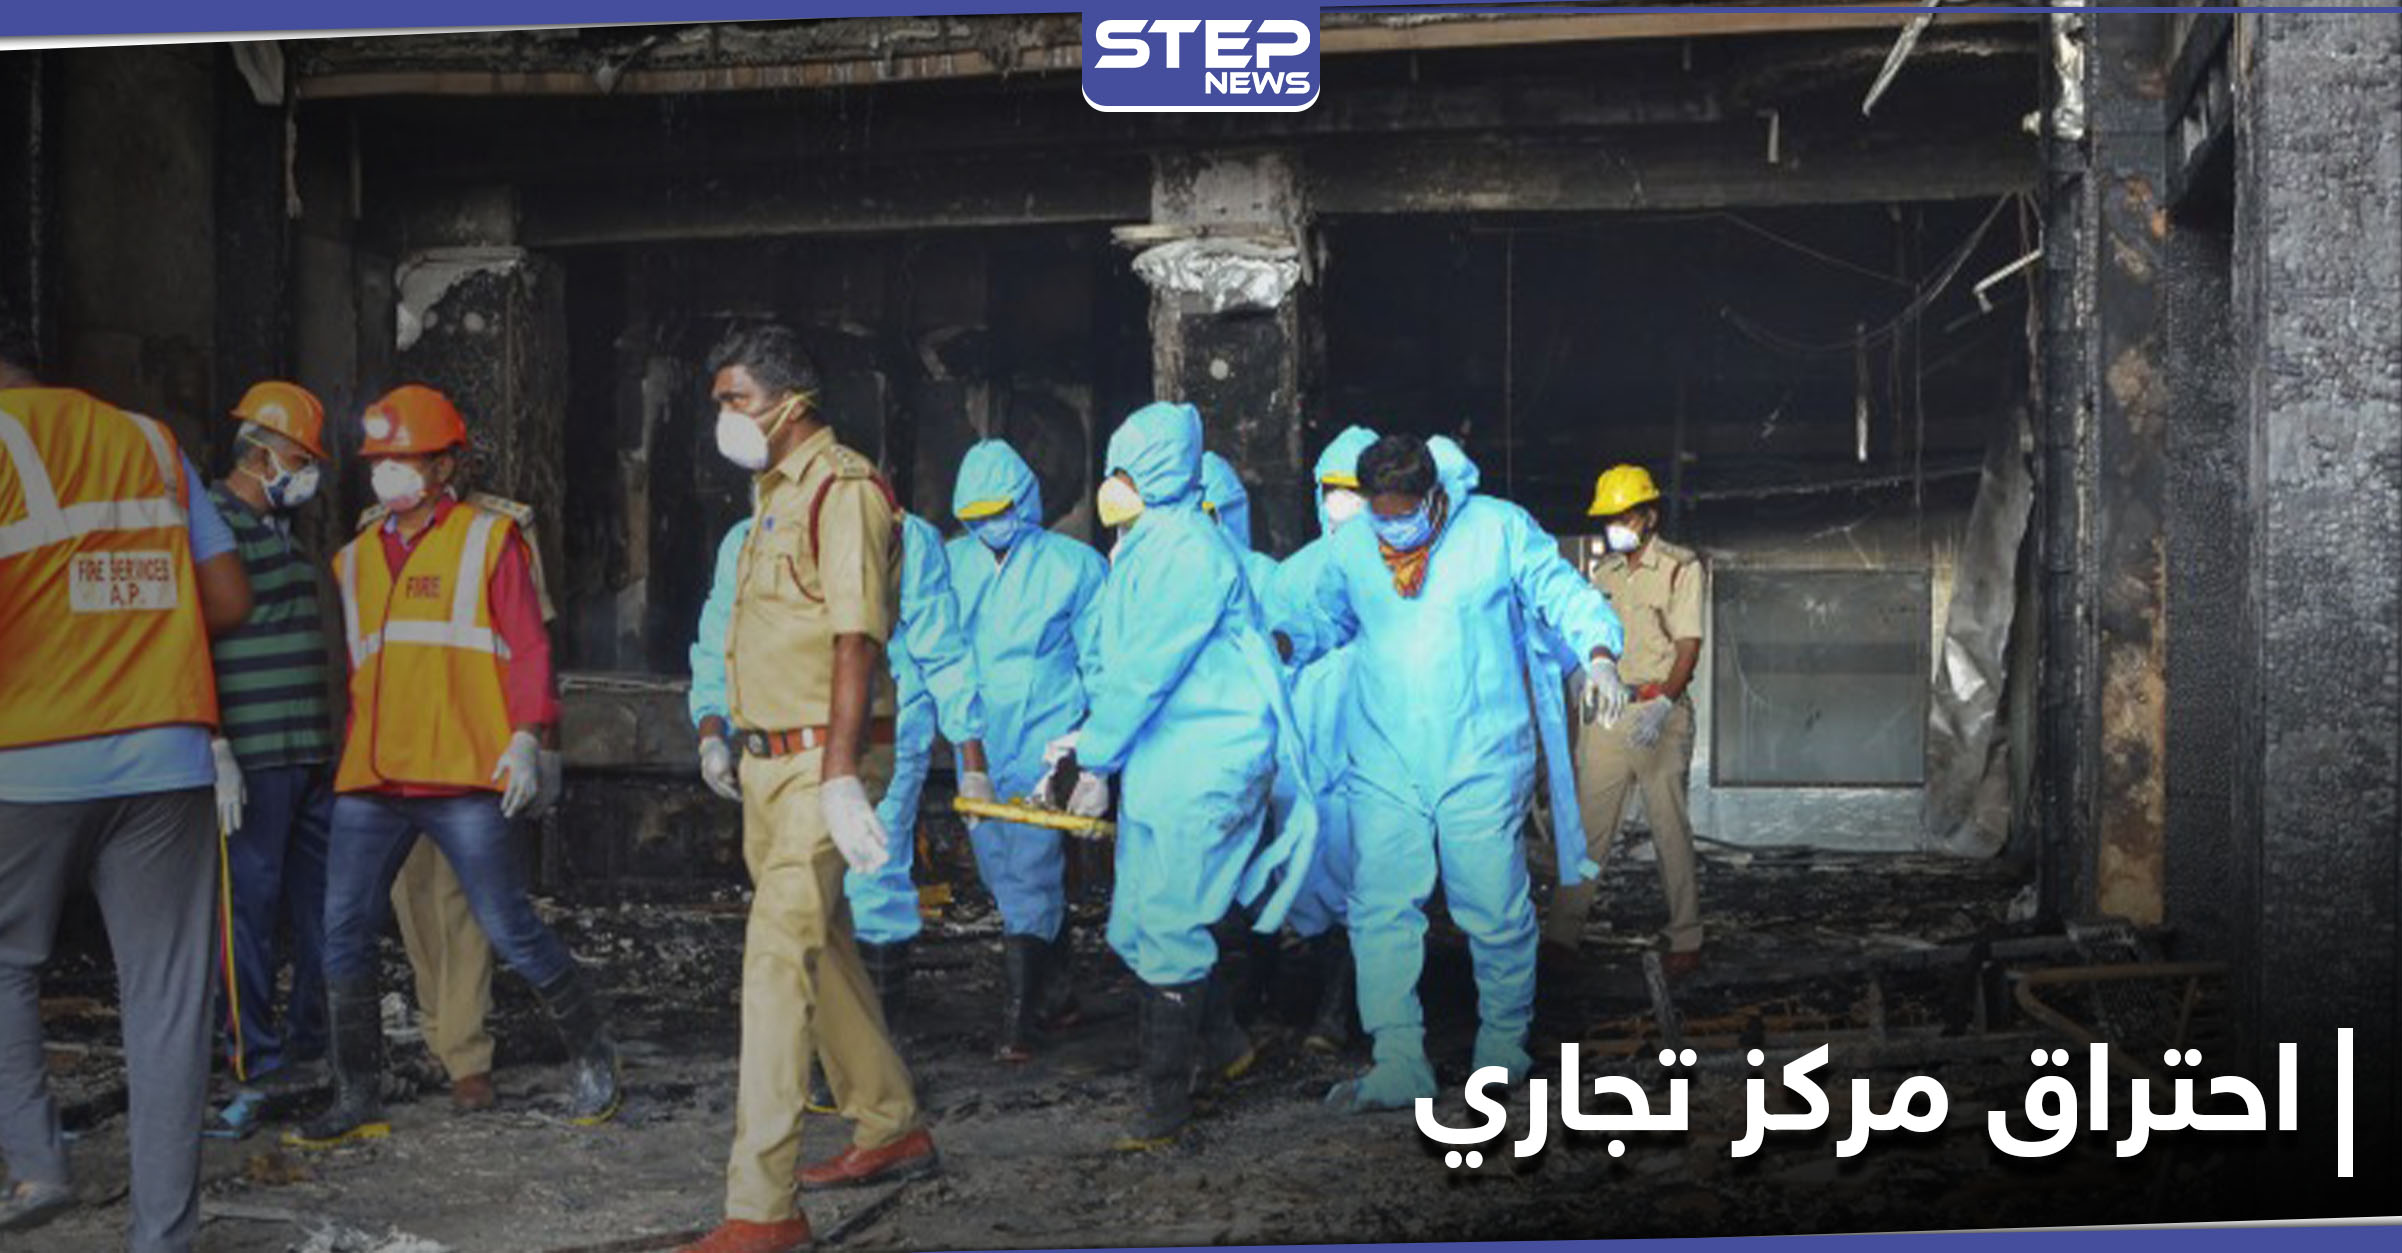 حريق مركز تجاري يضمُّ مستشفى لمرضى كورونا في مومباي الهندية